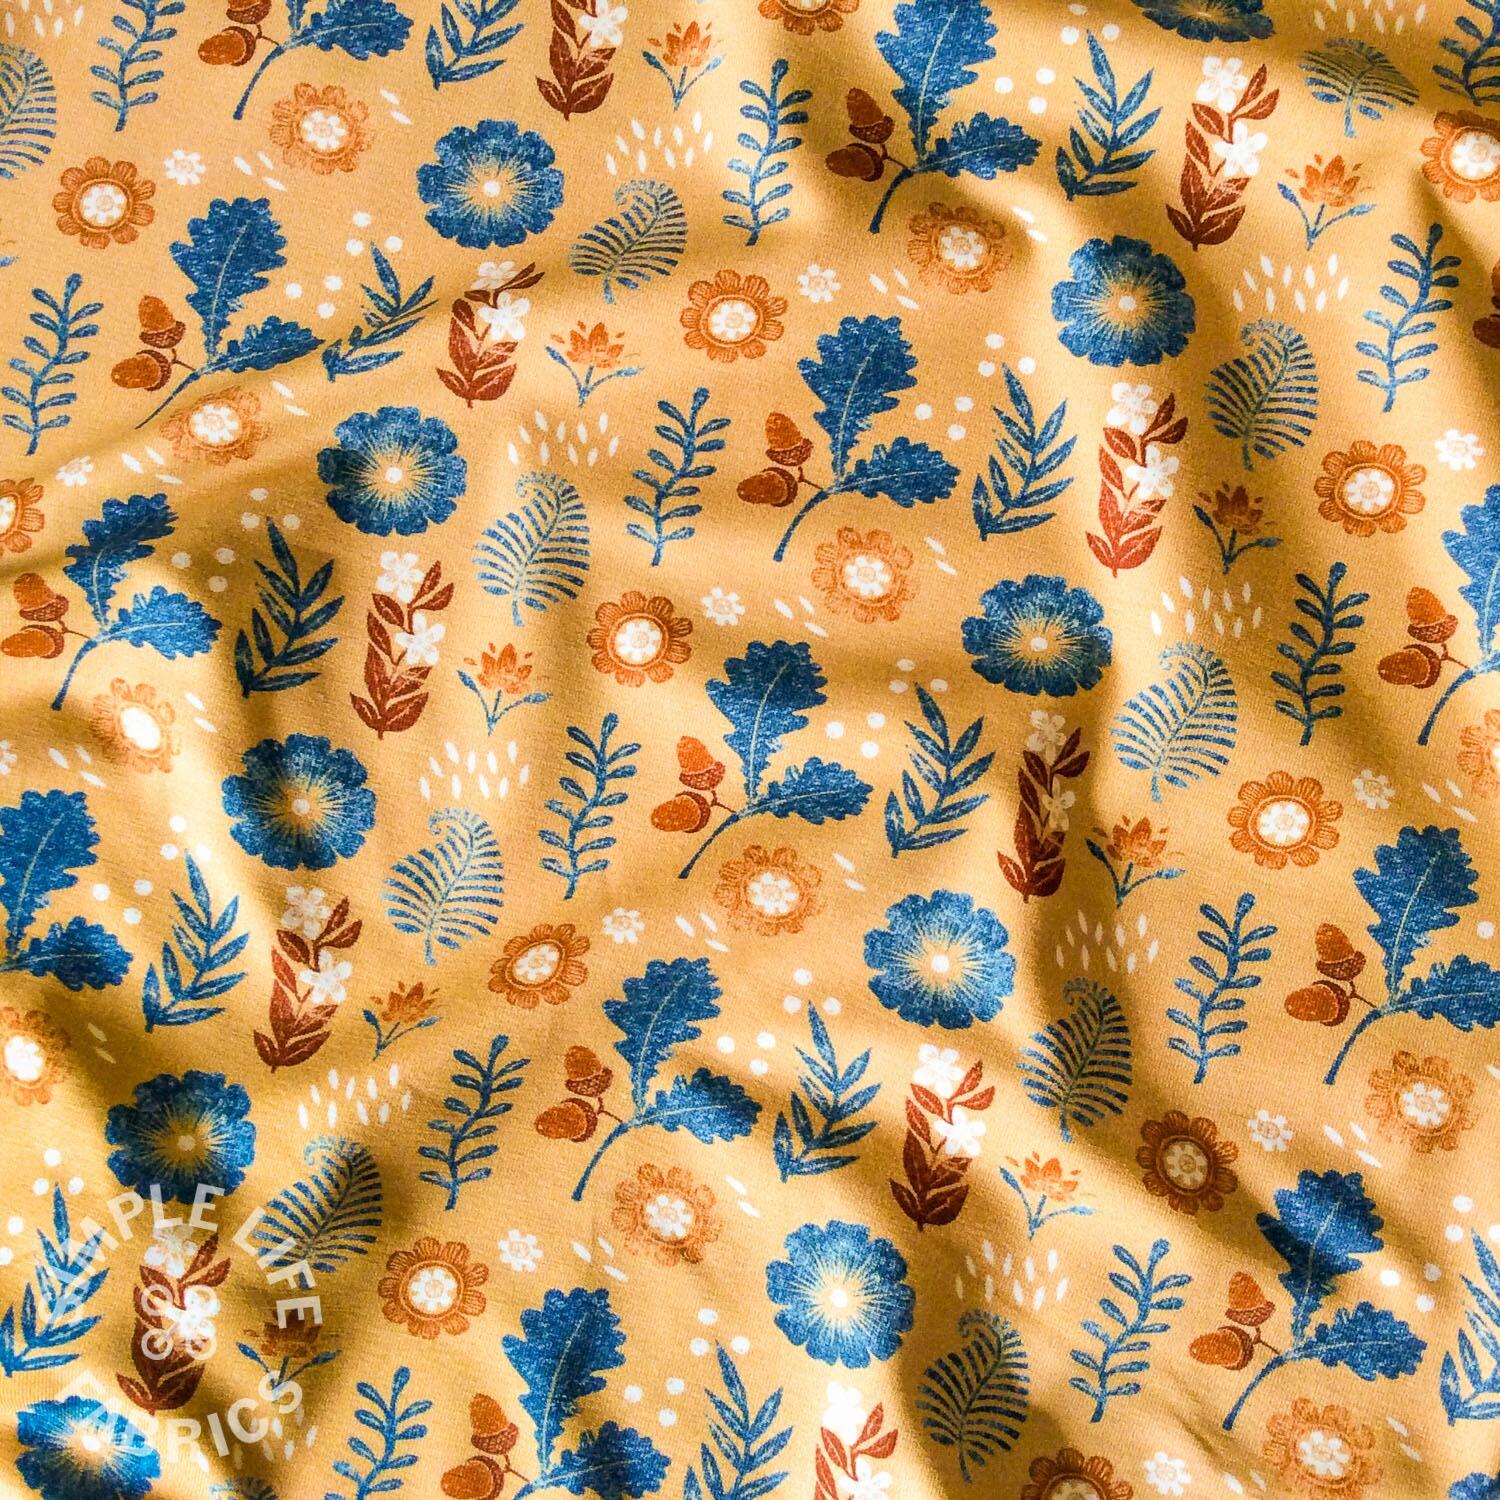 Stamp floral designer jersey fabric